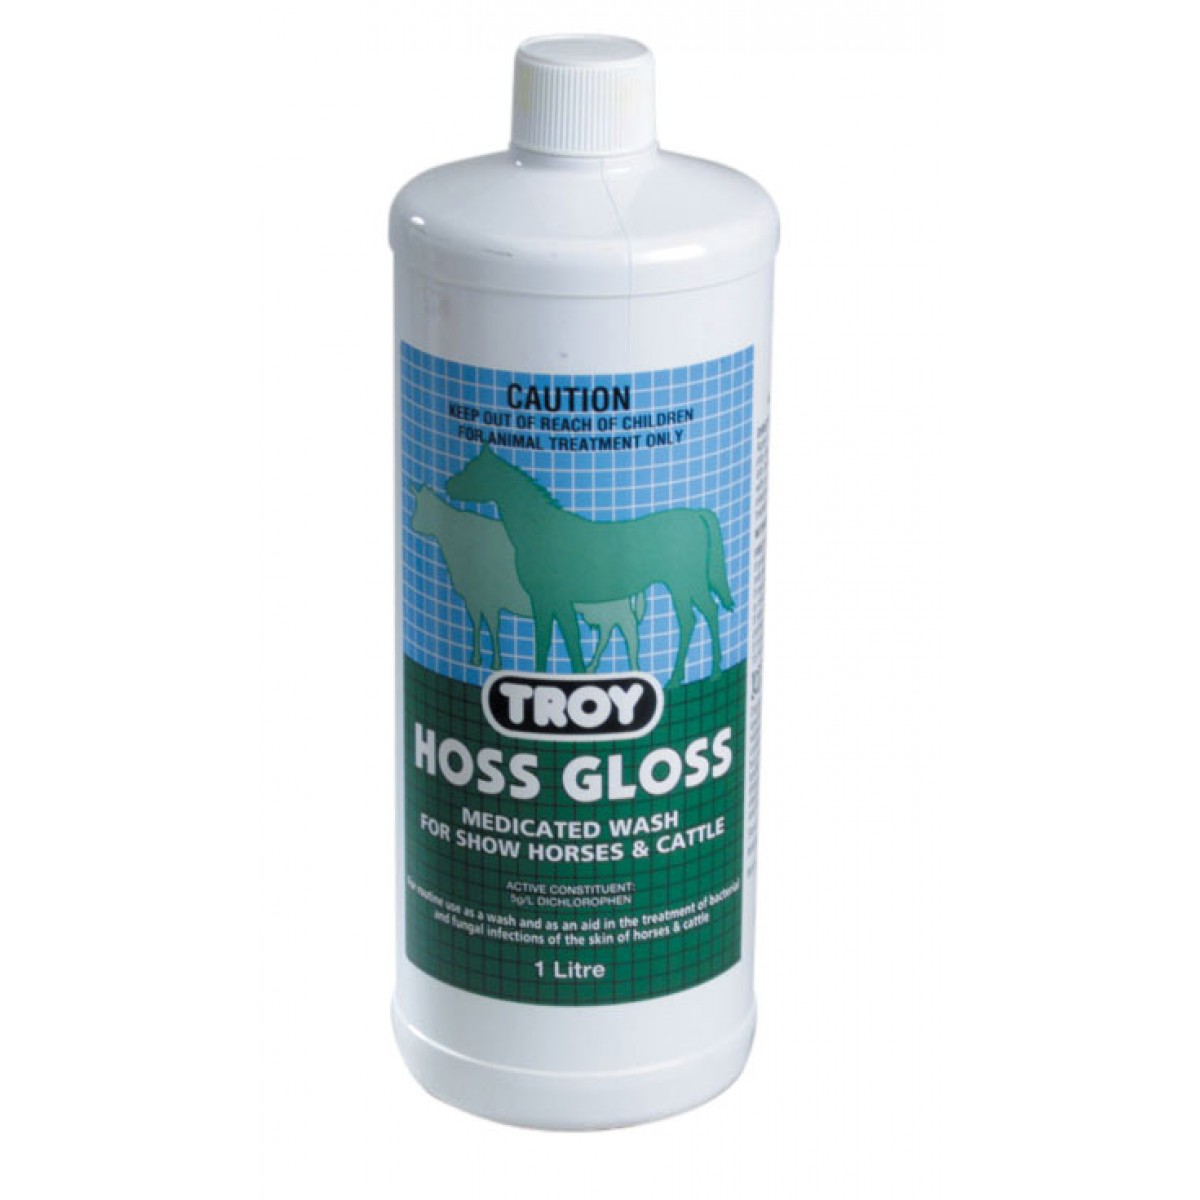 Troy Hoss Gloss Medicated Shampoo 1L